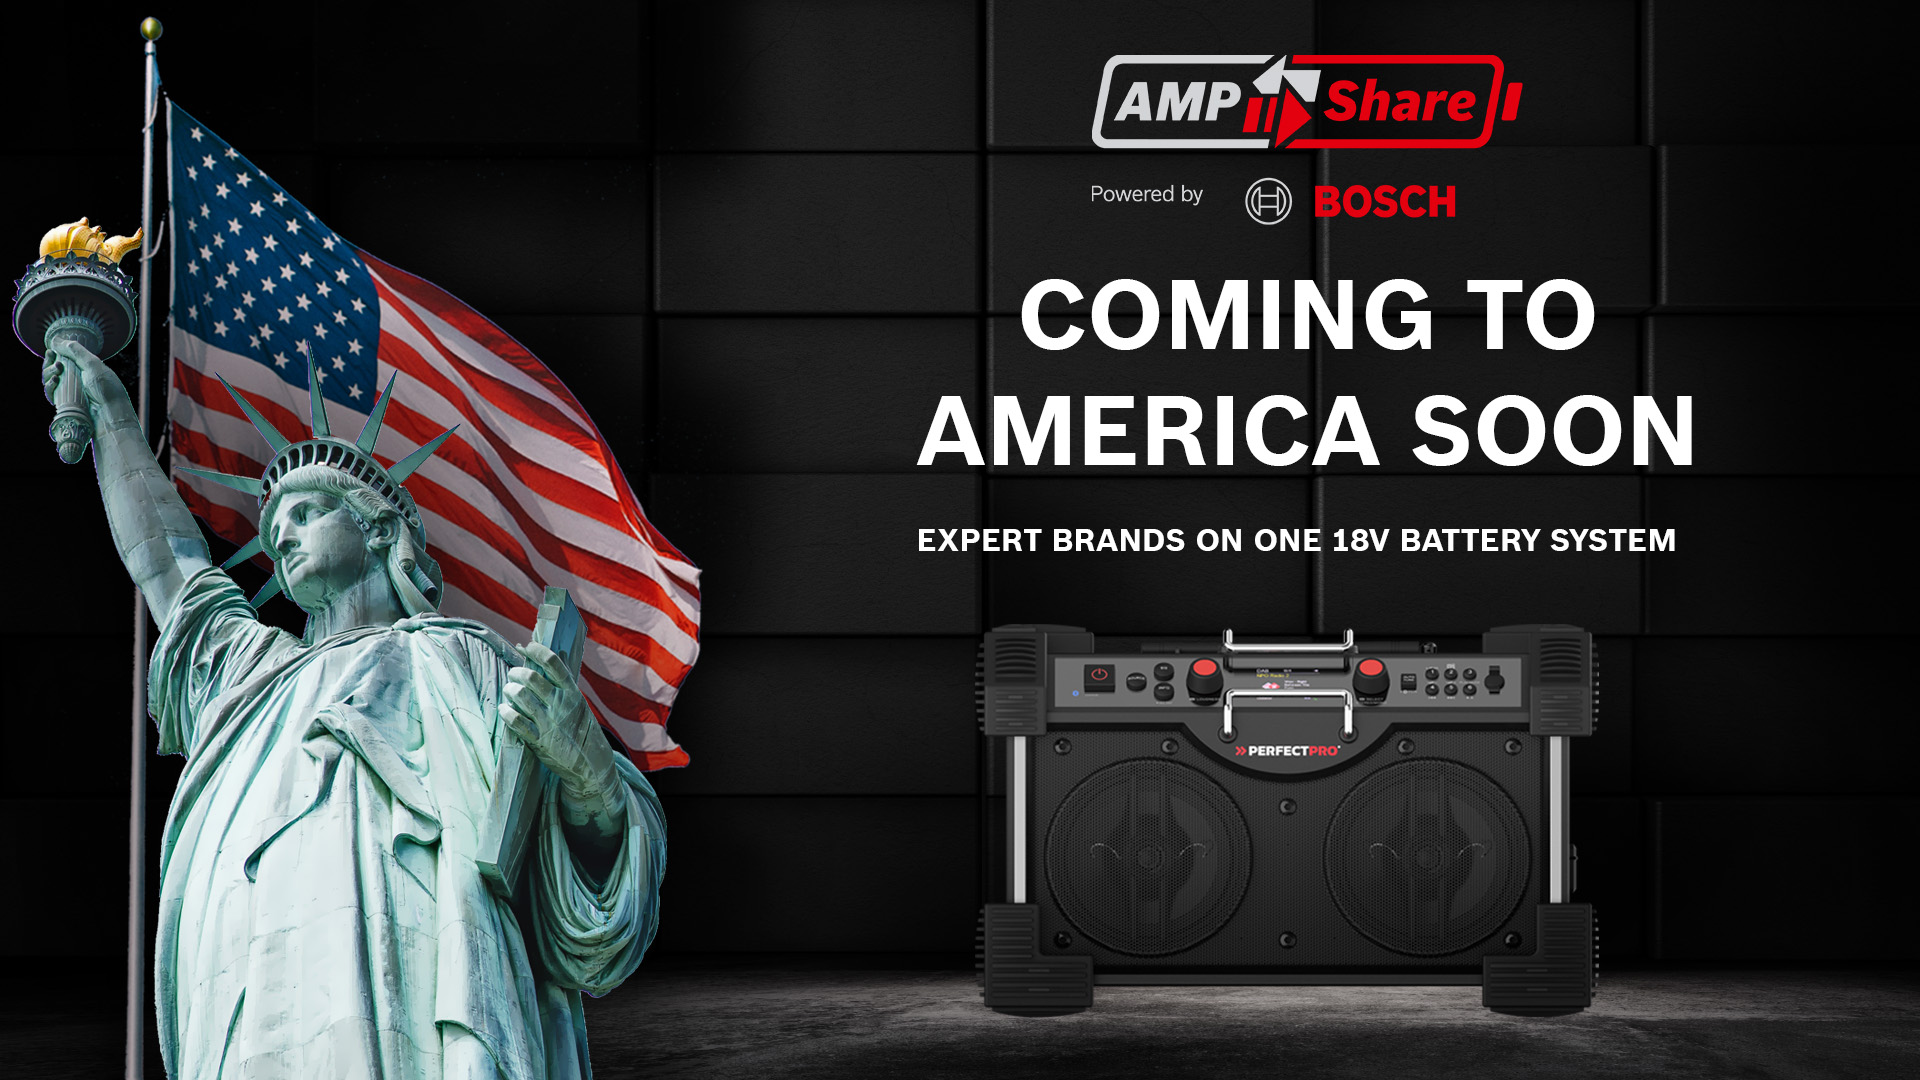 AMPShare – Powered by Bosch wordt gelanceerd in de VS en Canada